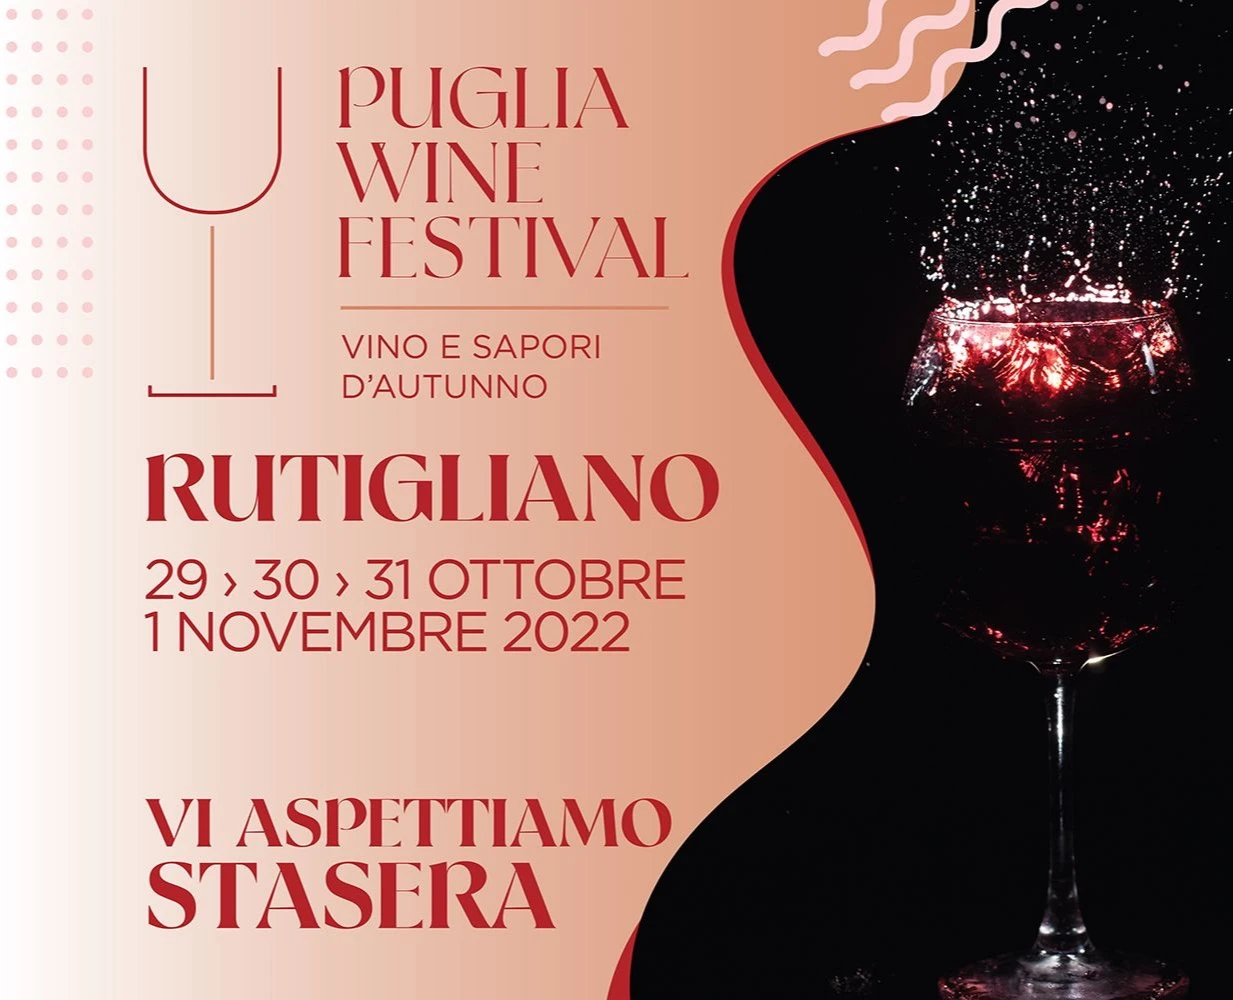 A Rutigliano Il Puglia Wine Festival